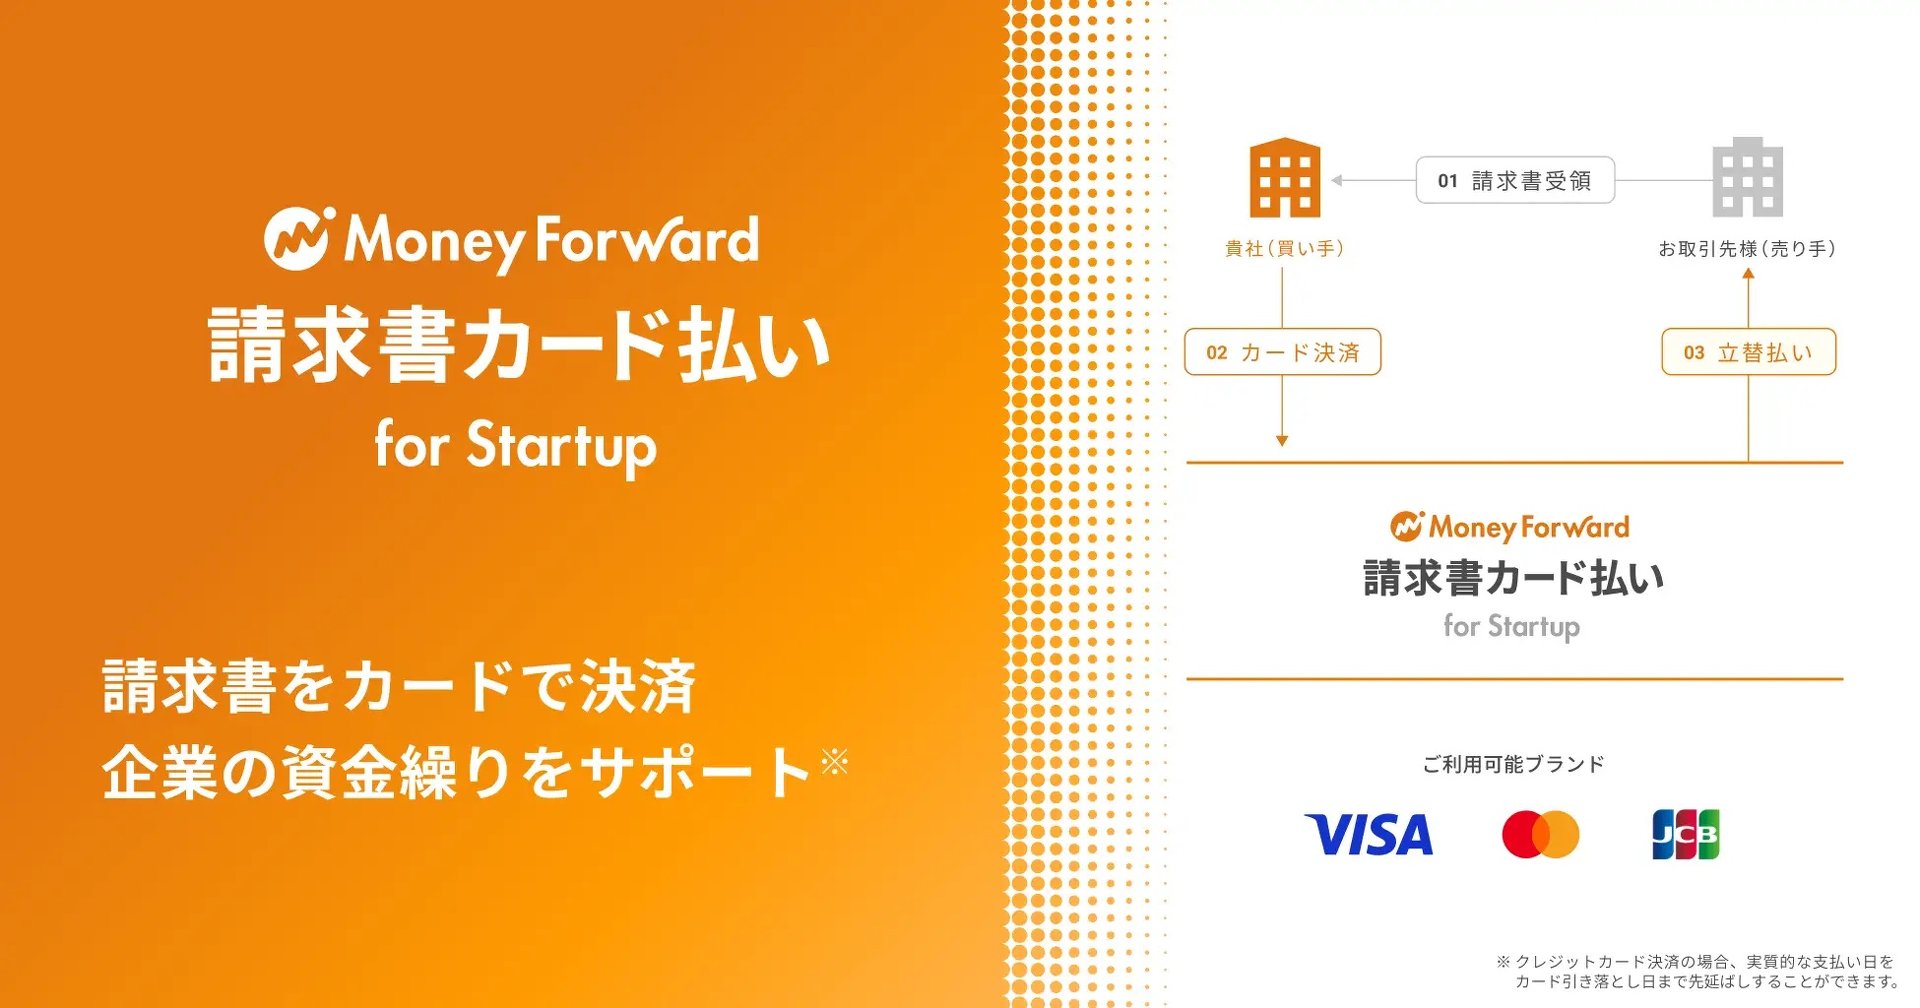 マネーフォワードケッサイ、資金繰りを改善するBPSP「マネーフォワード 請求書カード払い for Startup」提供開始